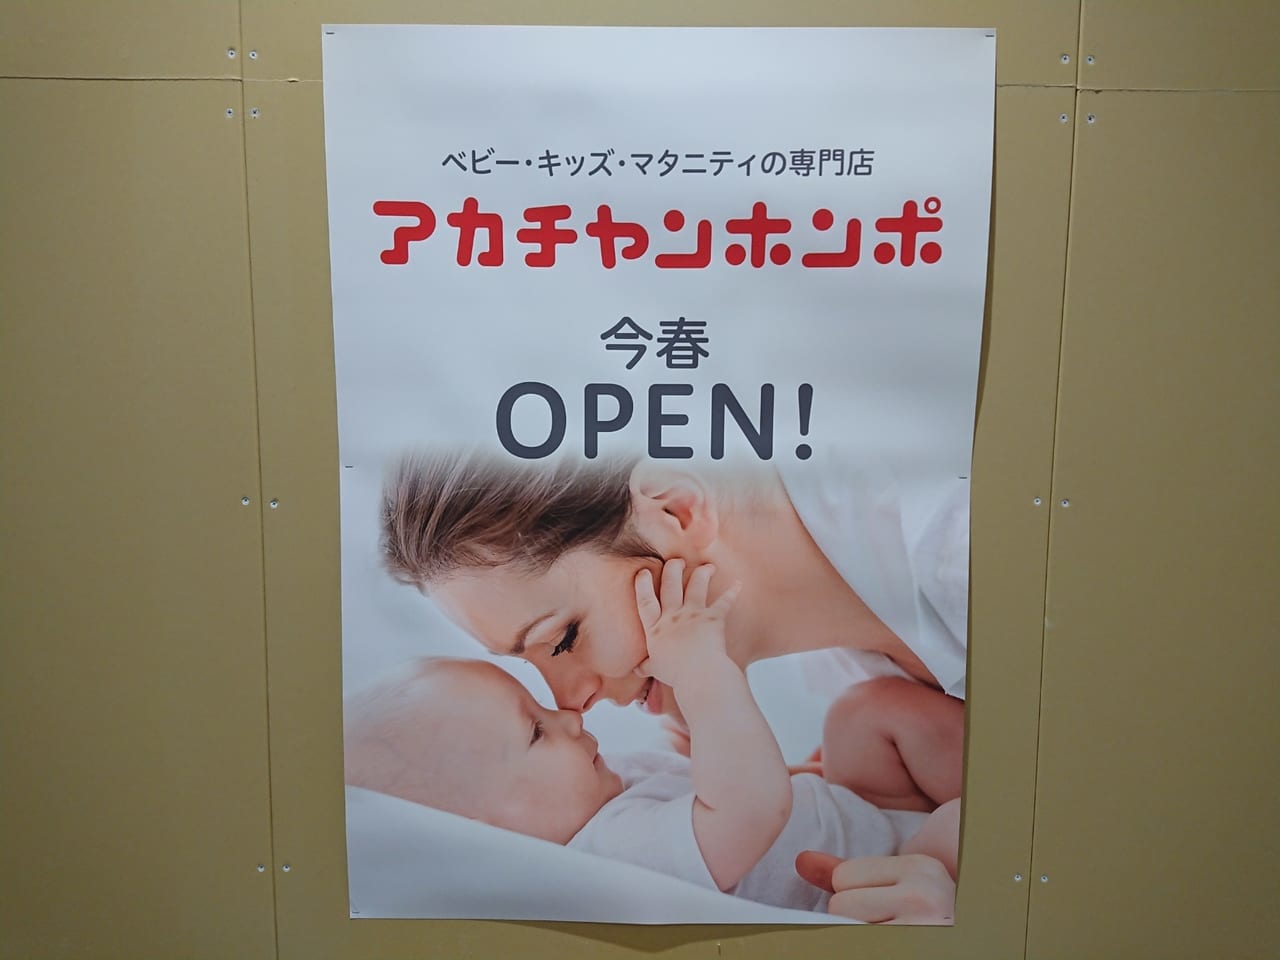 スマーク伊勢崎来春オープンの『アカチャンホンポ』出店場所が決まりました